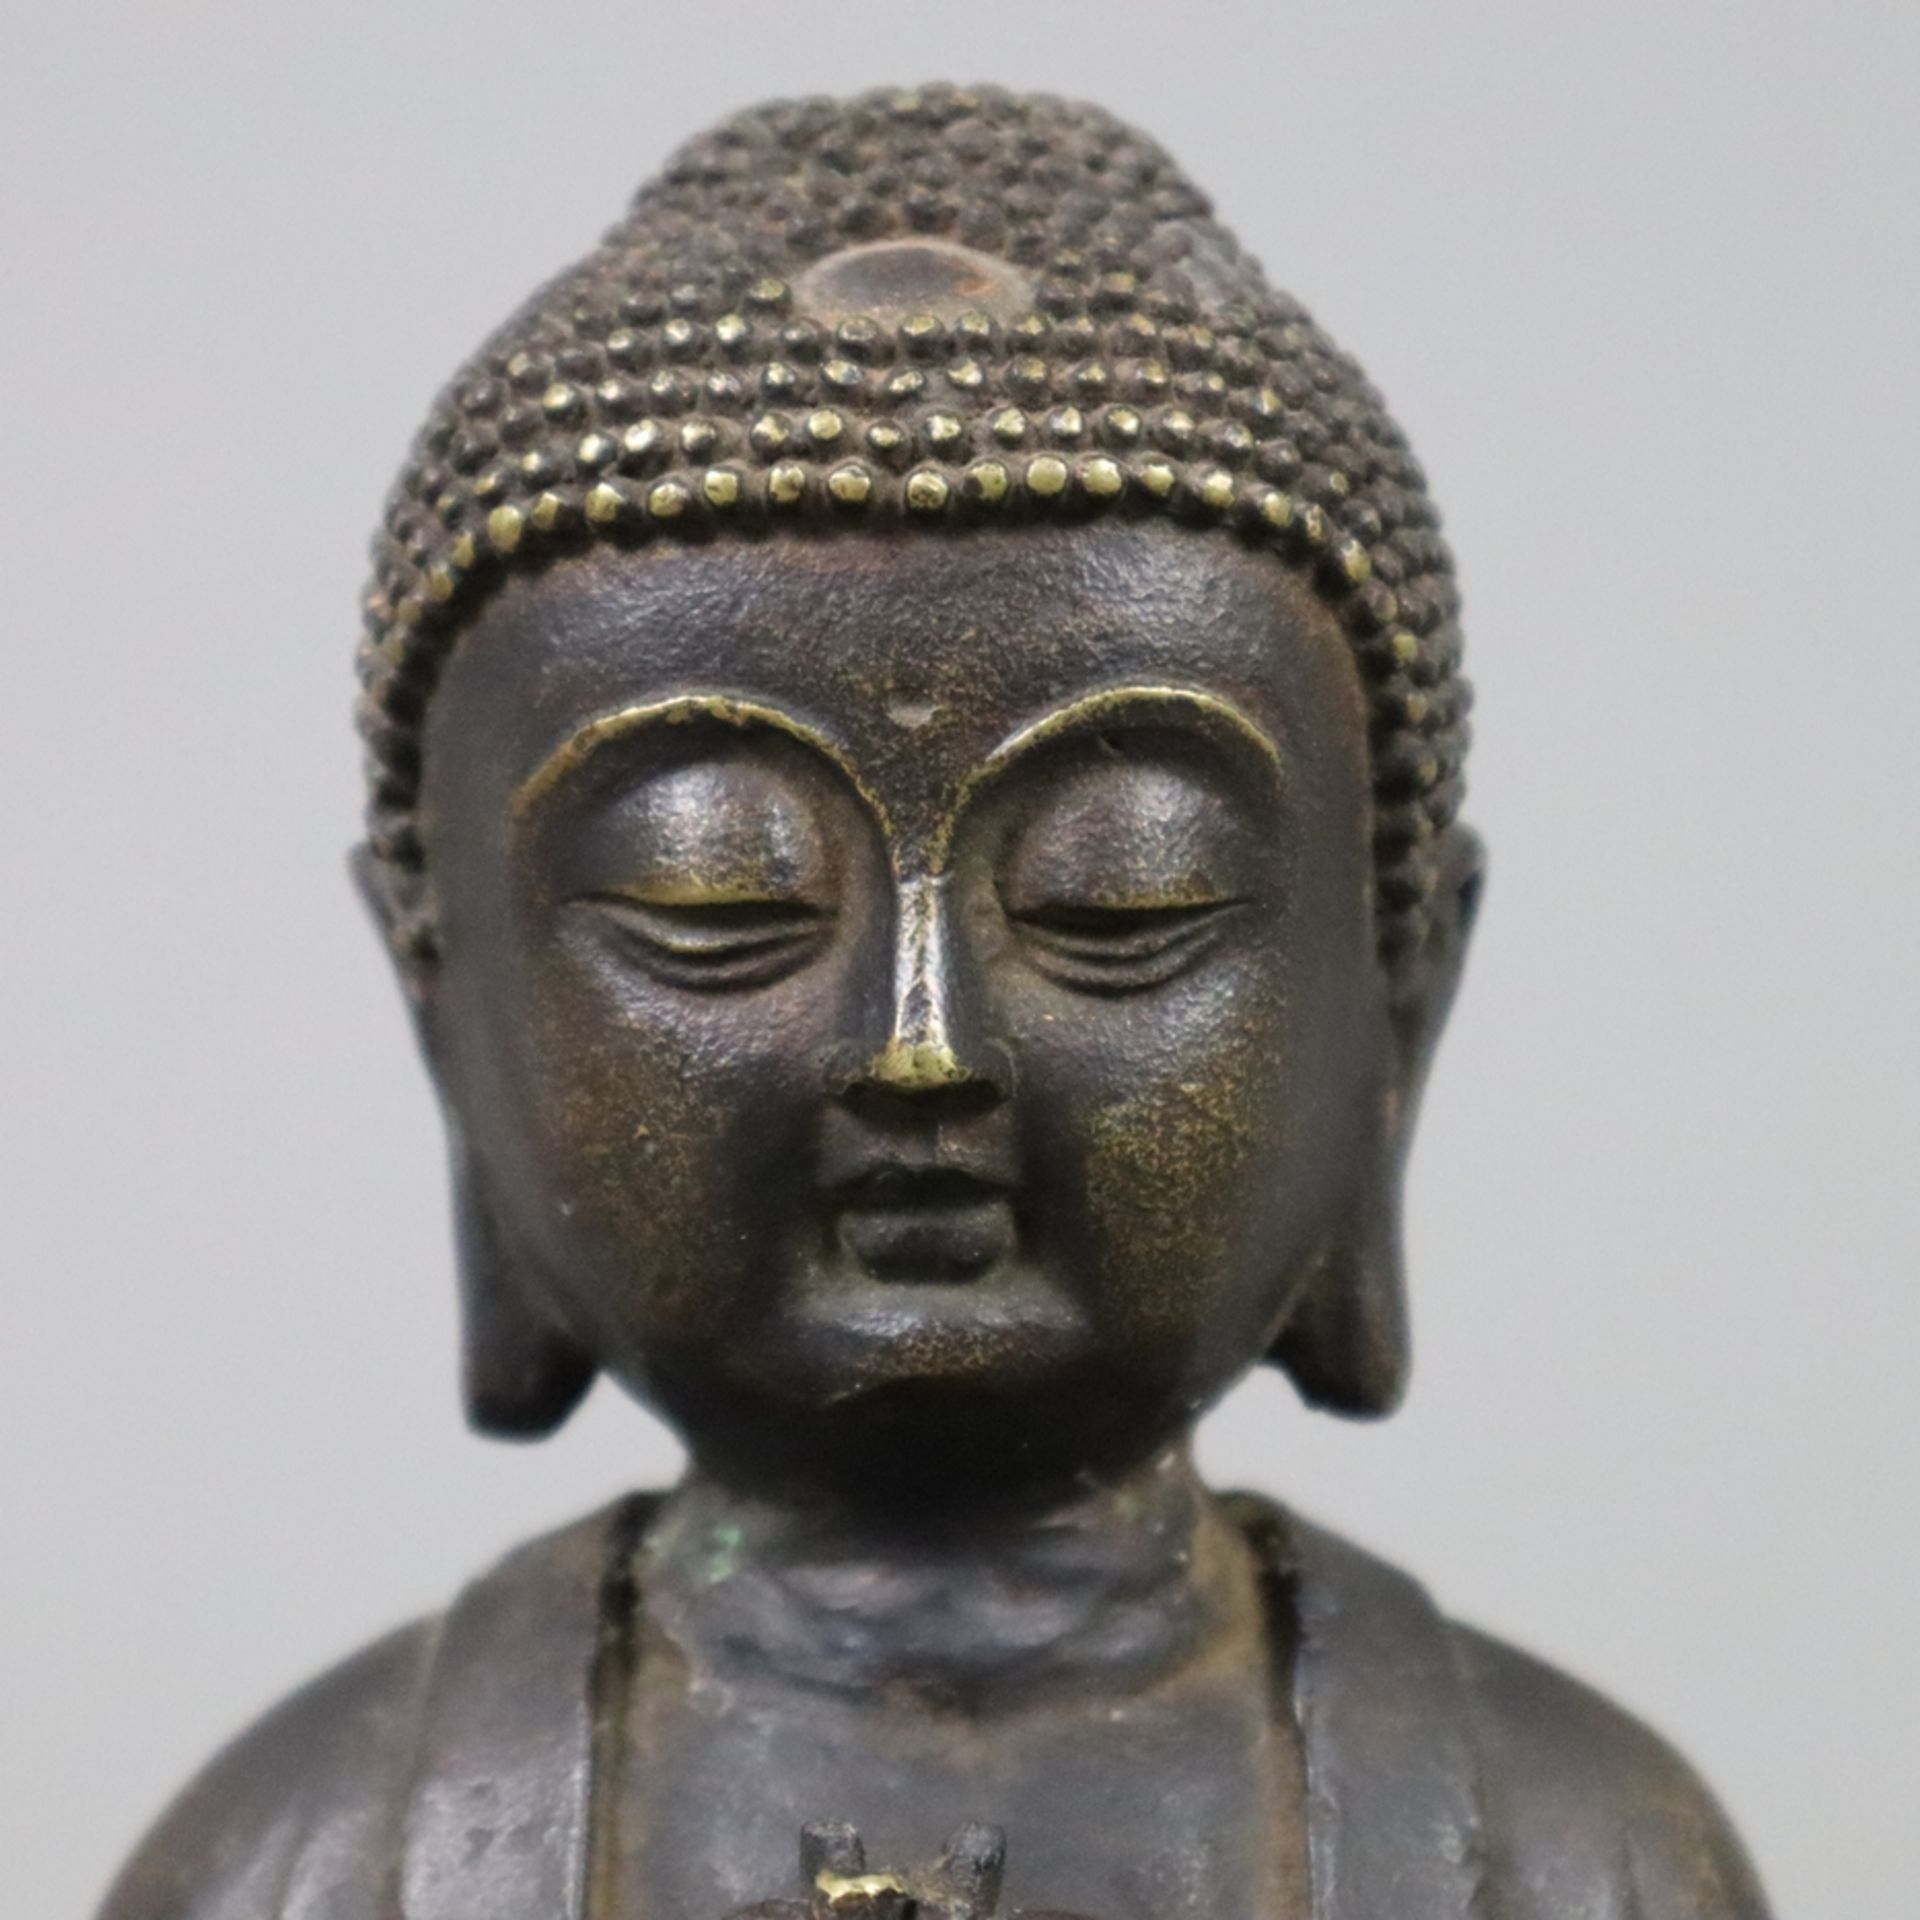 Buddhafigur - China, Bronzelegierung braun patiniert, in Meditationspose auf hohem Lotossockel sitz - Bild 3 aus 9